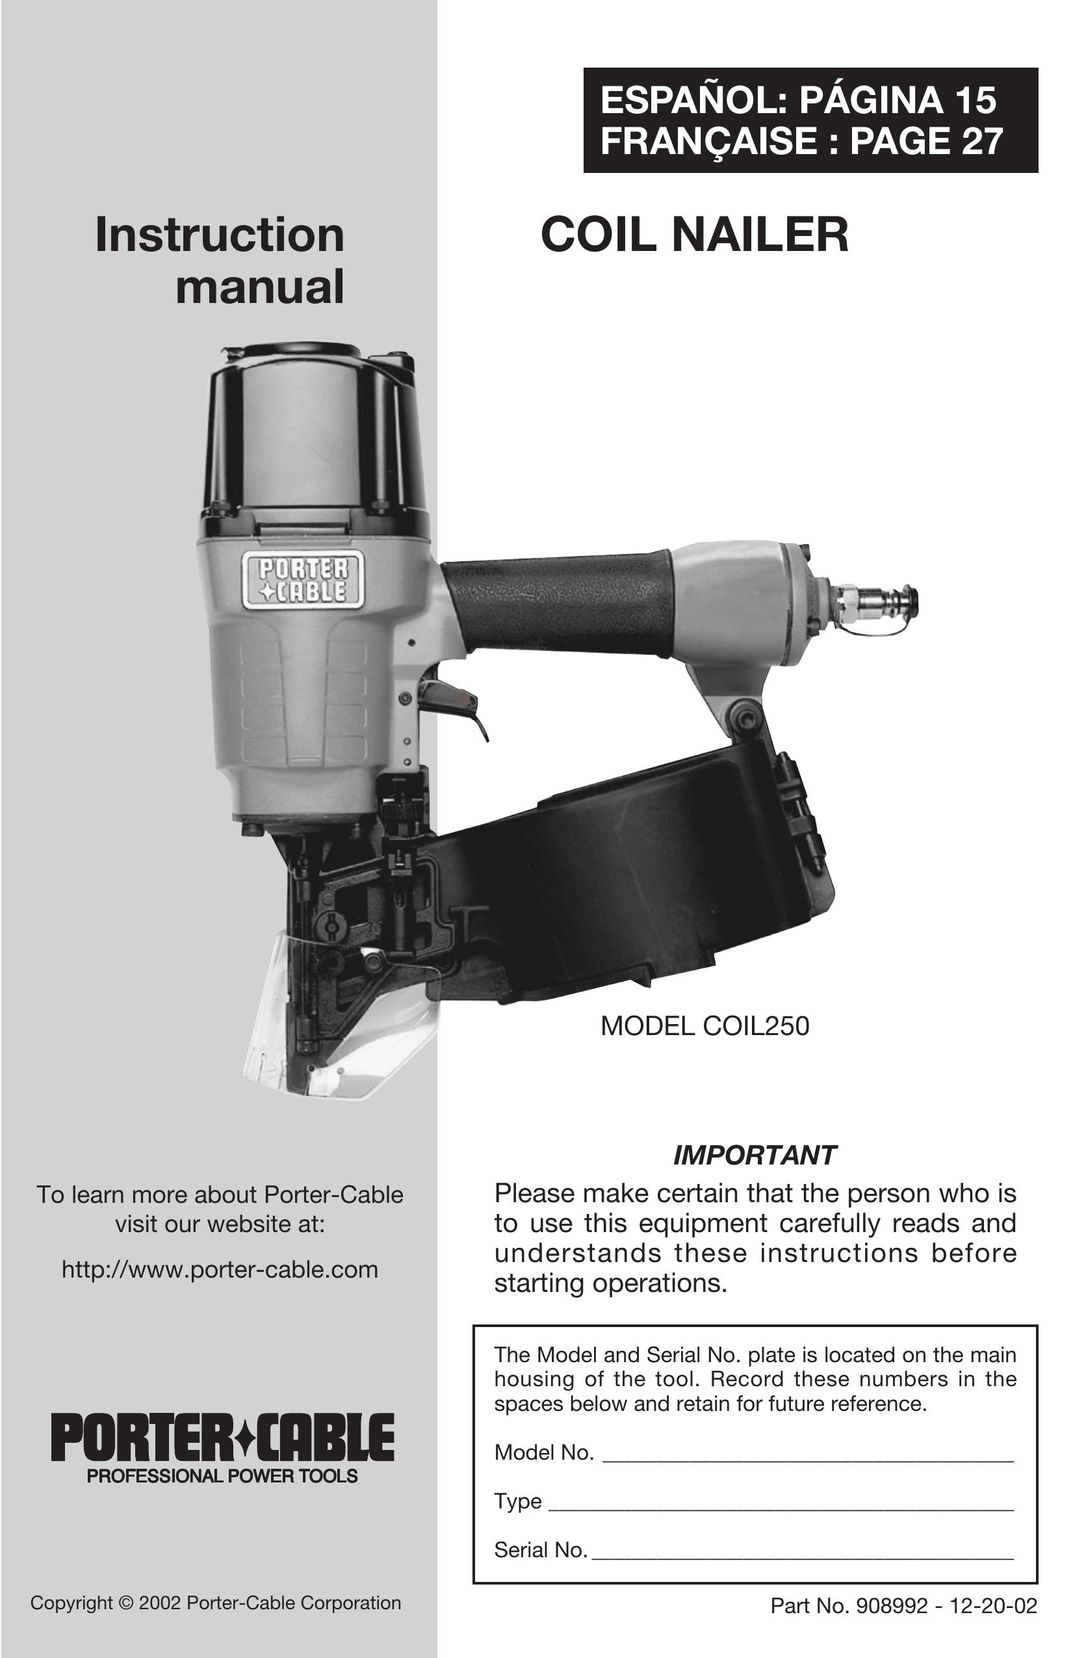 Porter-Cable COIL250 Nail Gun User Manual